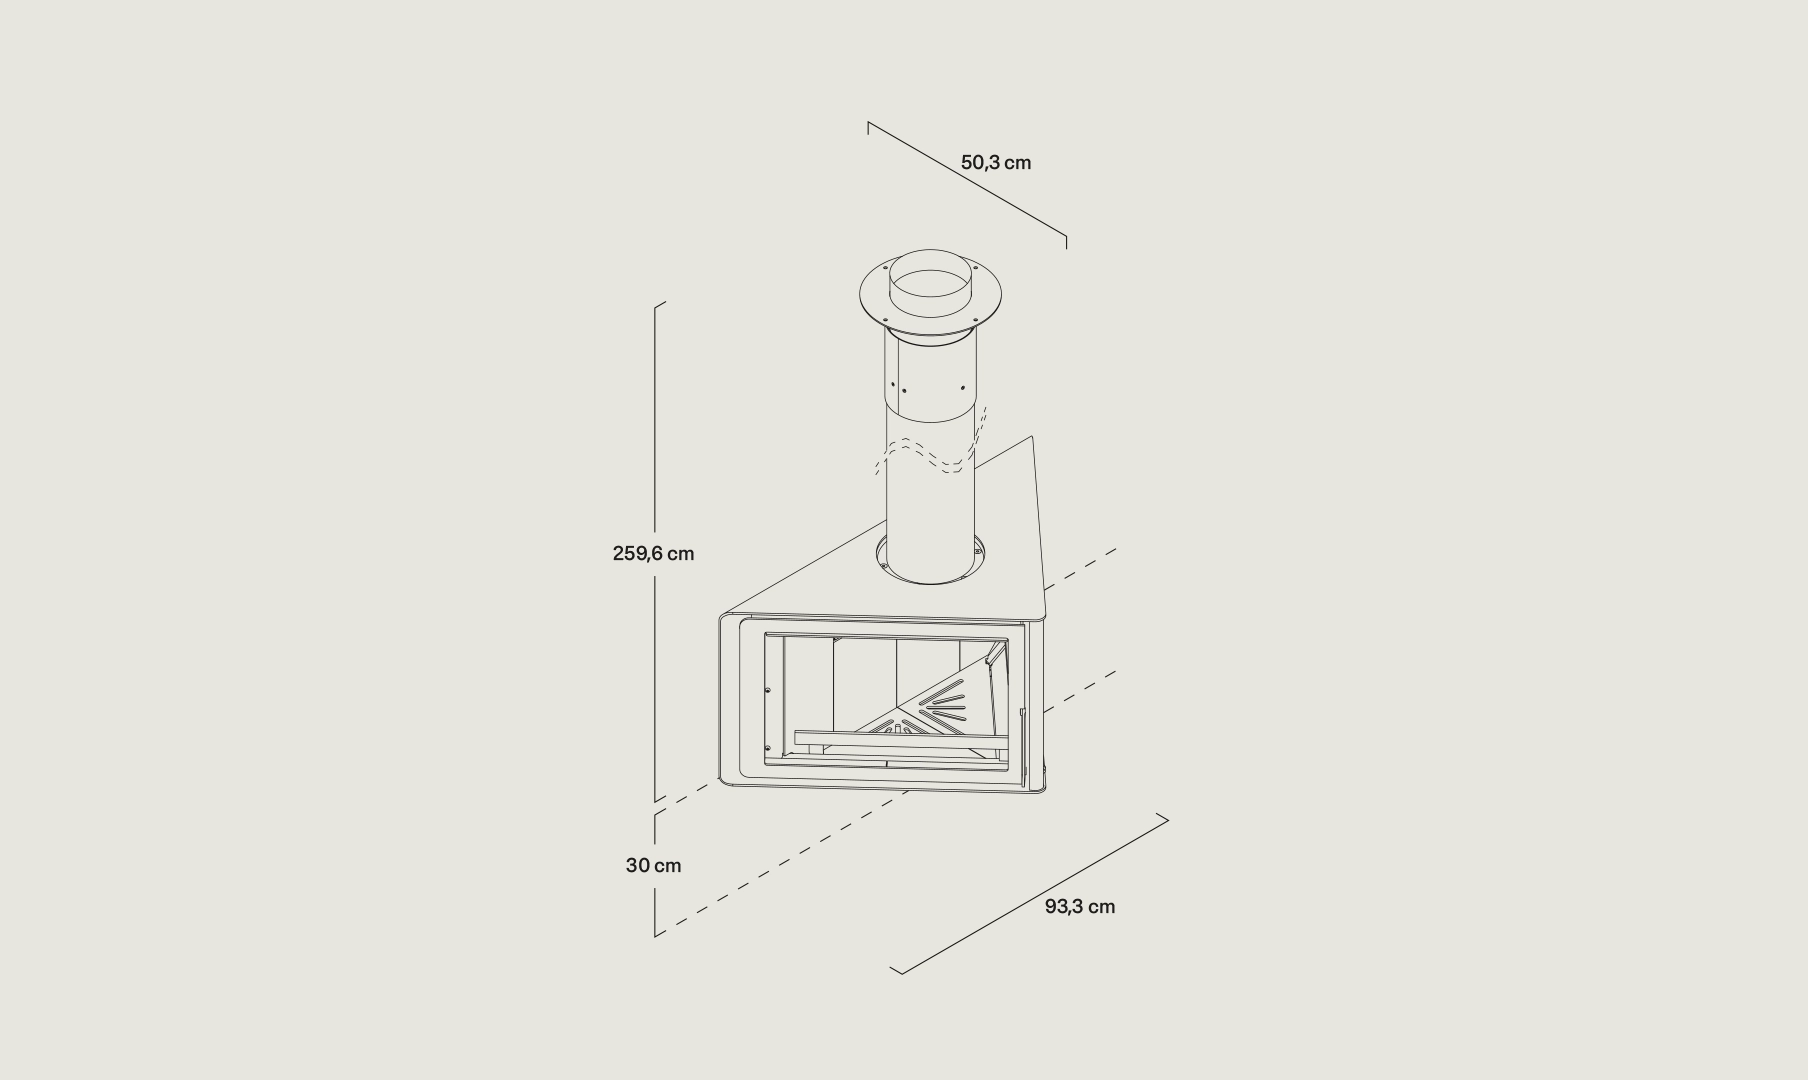 Dibujo vectorial de la chimenea de Vertex de Rocal con sus medidas 